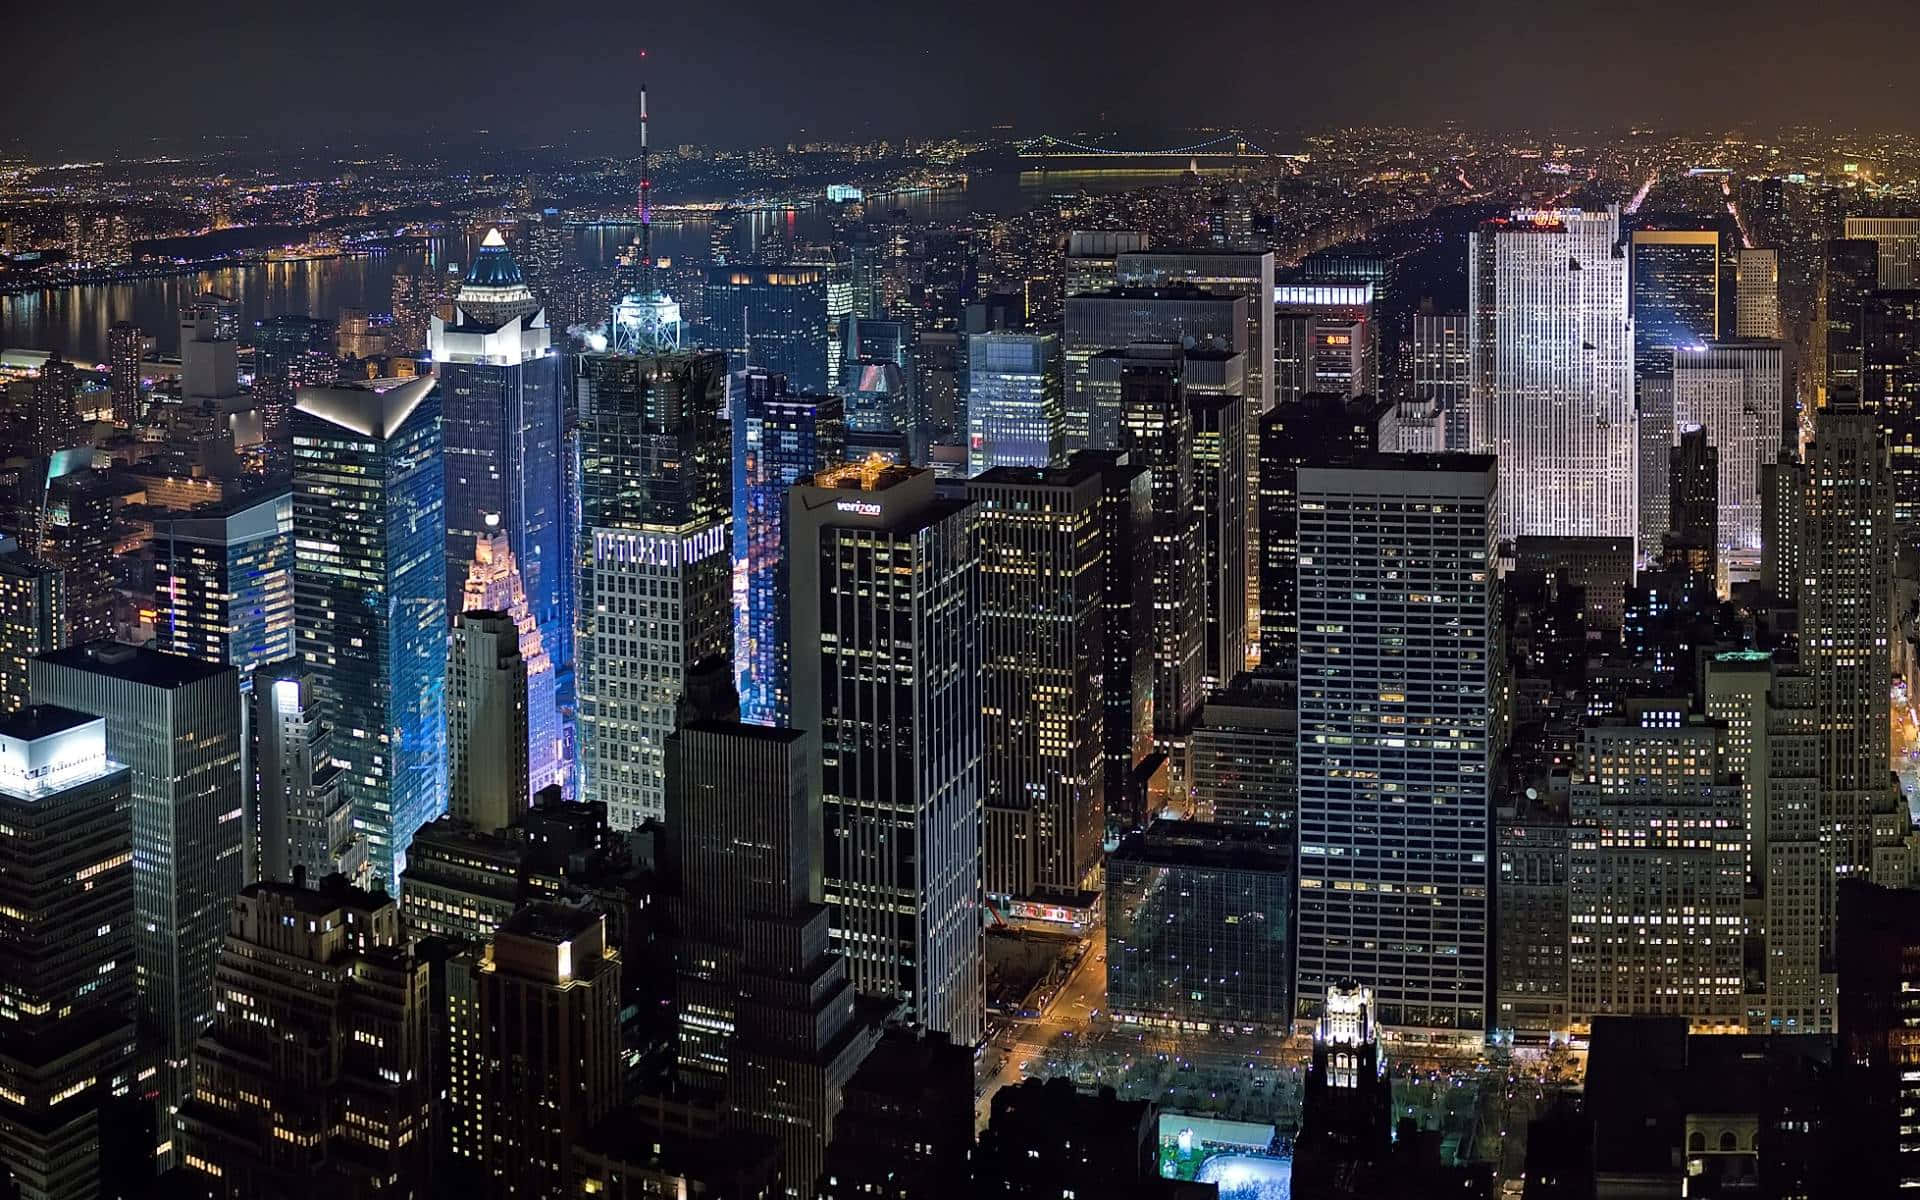 Fotosda Cidade De Nova Iorque À Noite, Incluindo O Empire State Building.